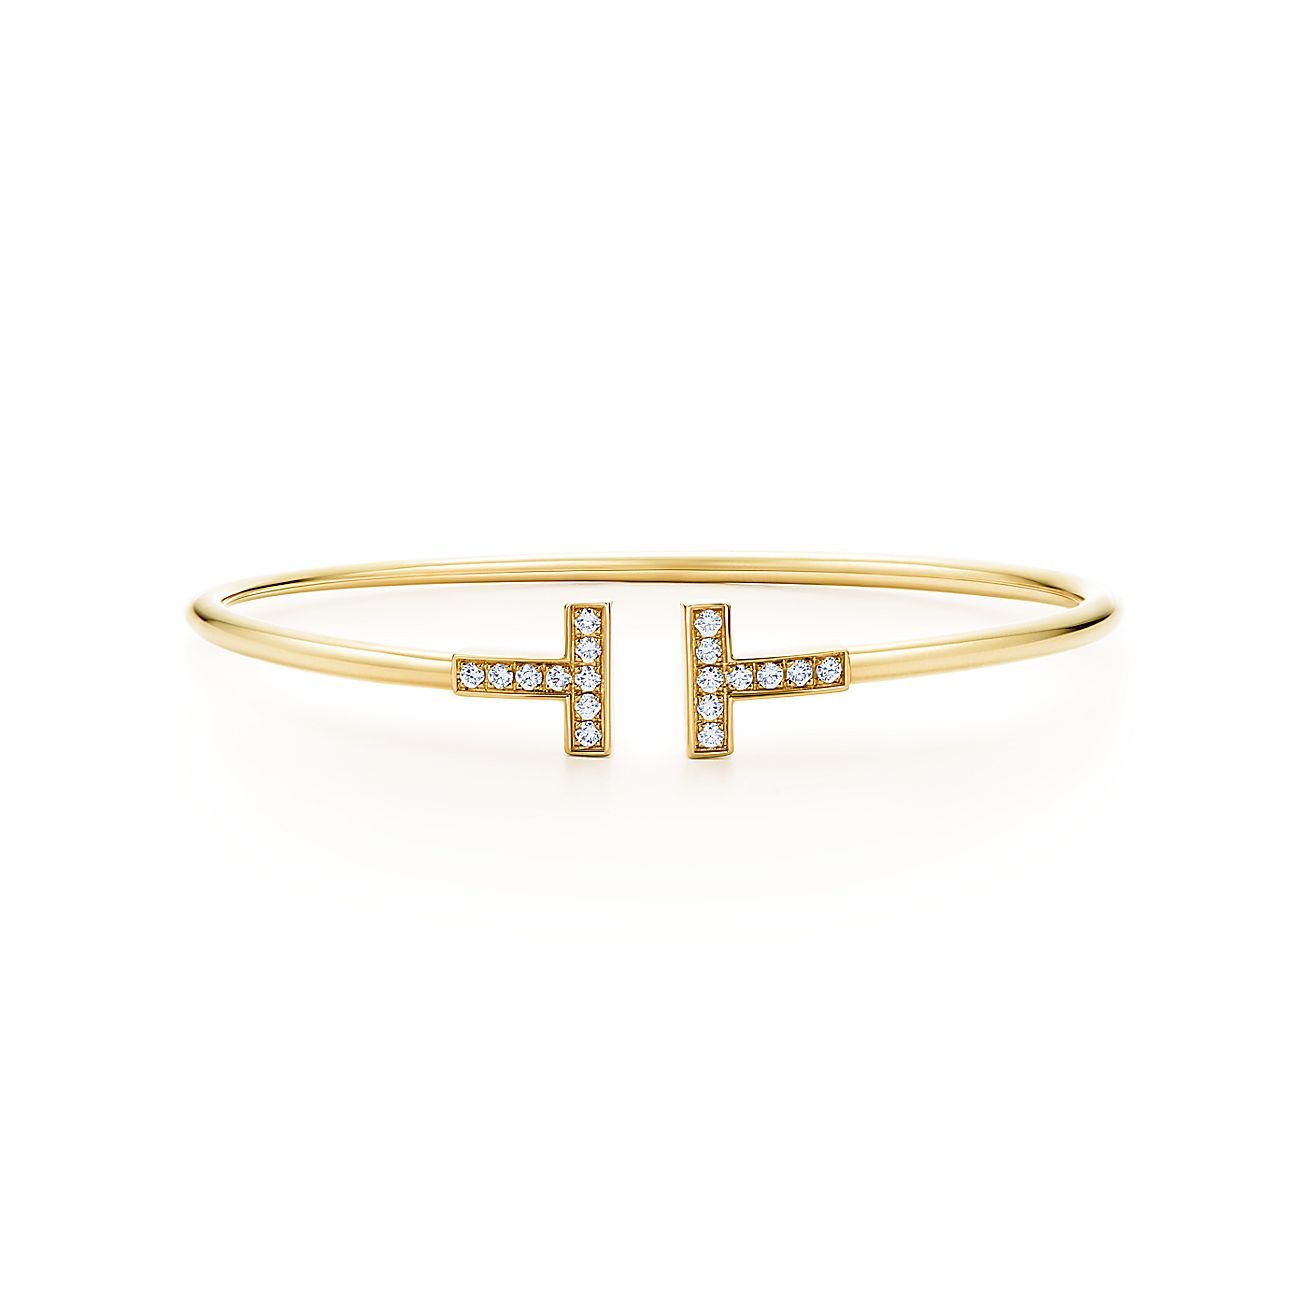 Tiffany T wire bracelet in 18k gold with diamonds, medium. | Tiffany & Co.